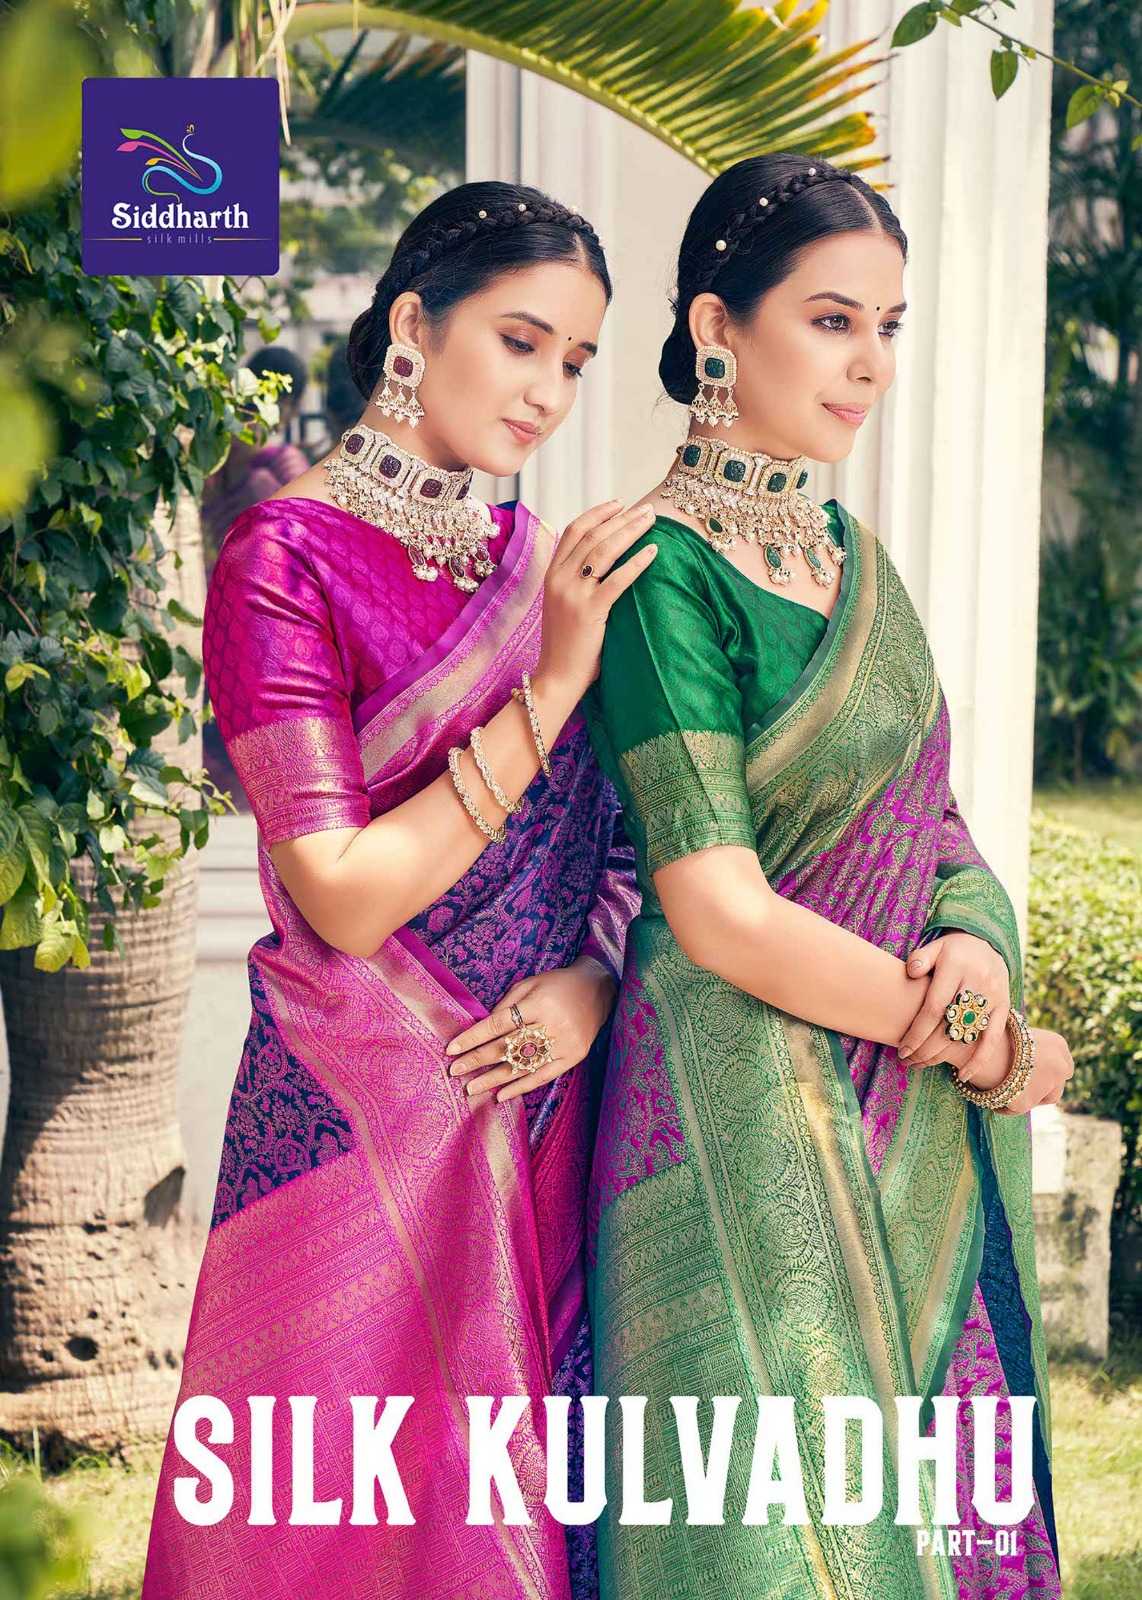 siddharth silk mills silk kulvadhu vol 1 beautiful elegant sarees supplier